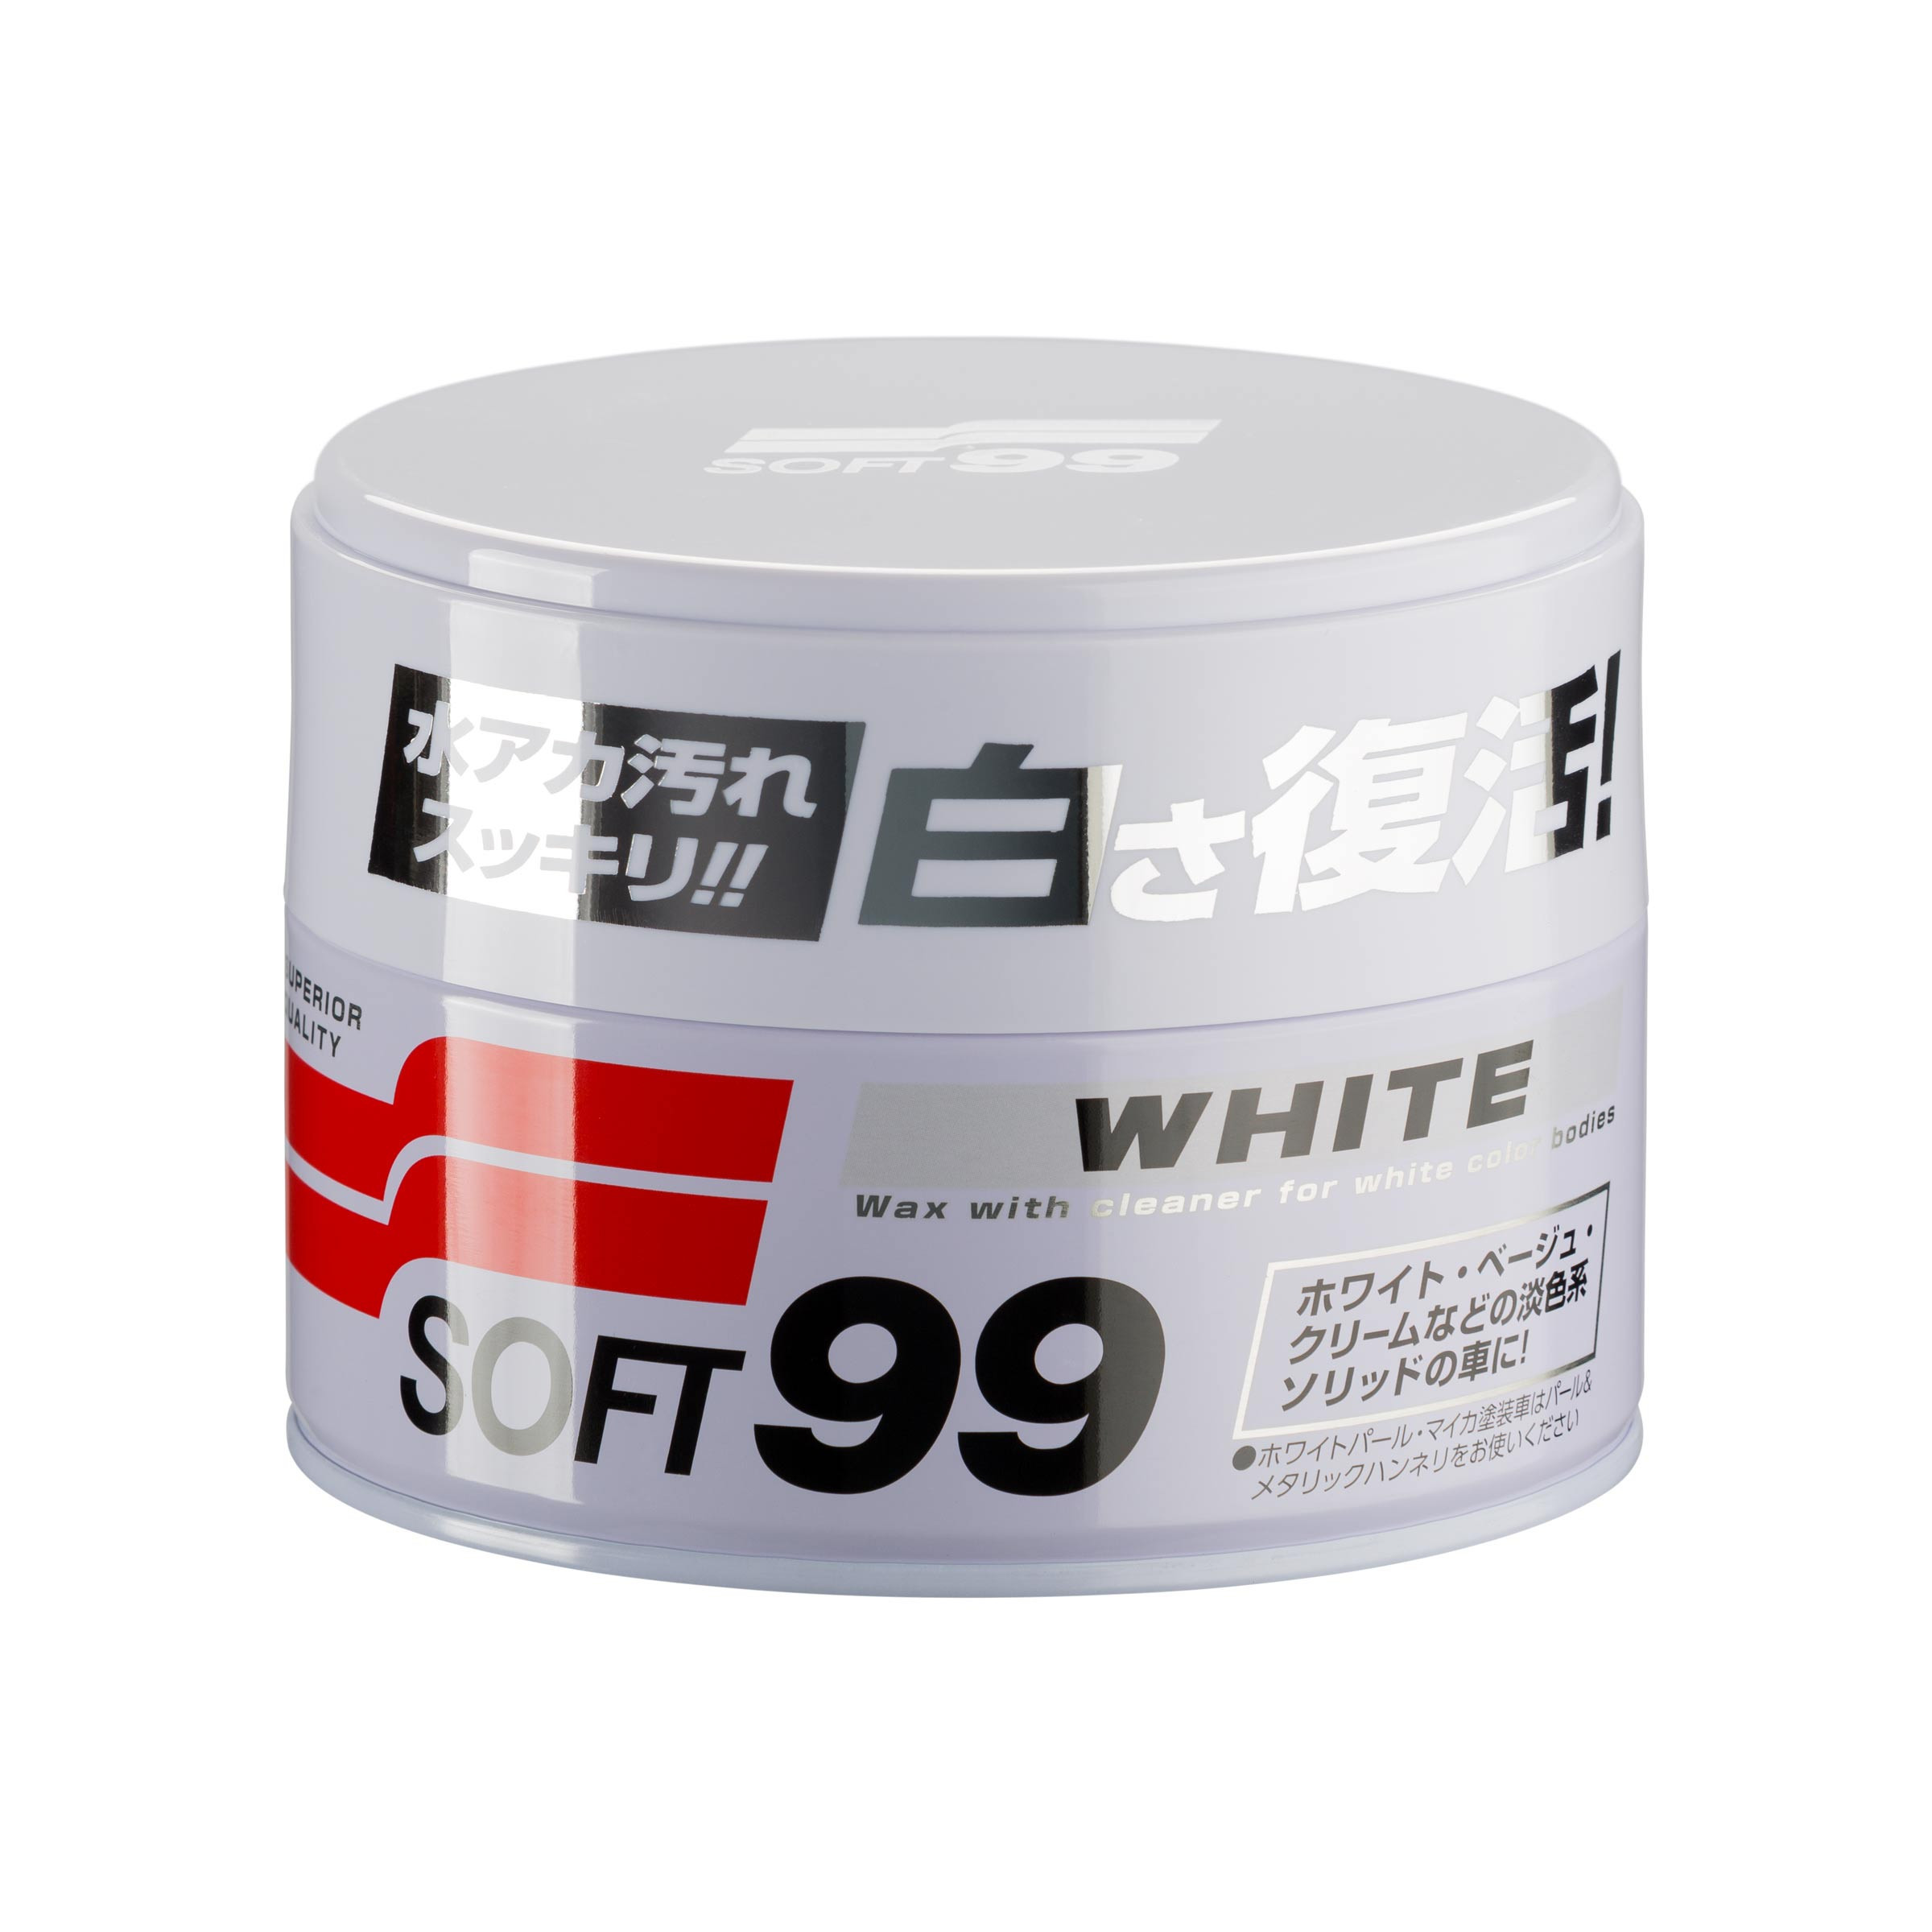 White Soft99 Wax, soft car wax, 350 g